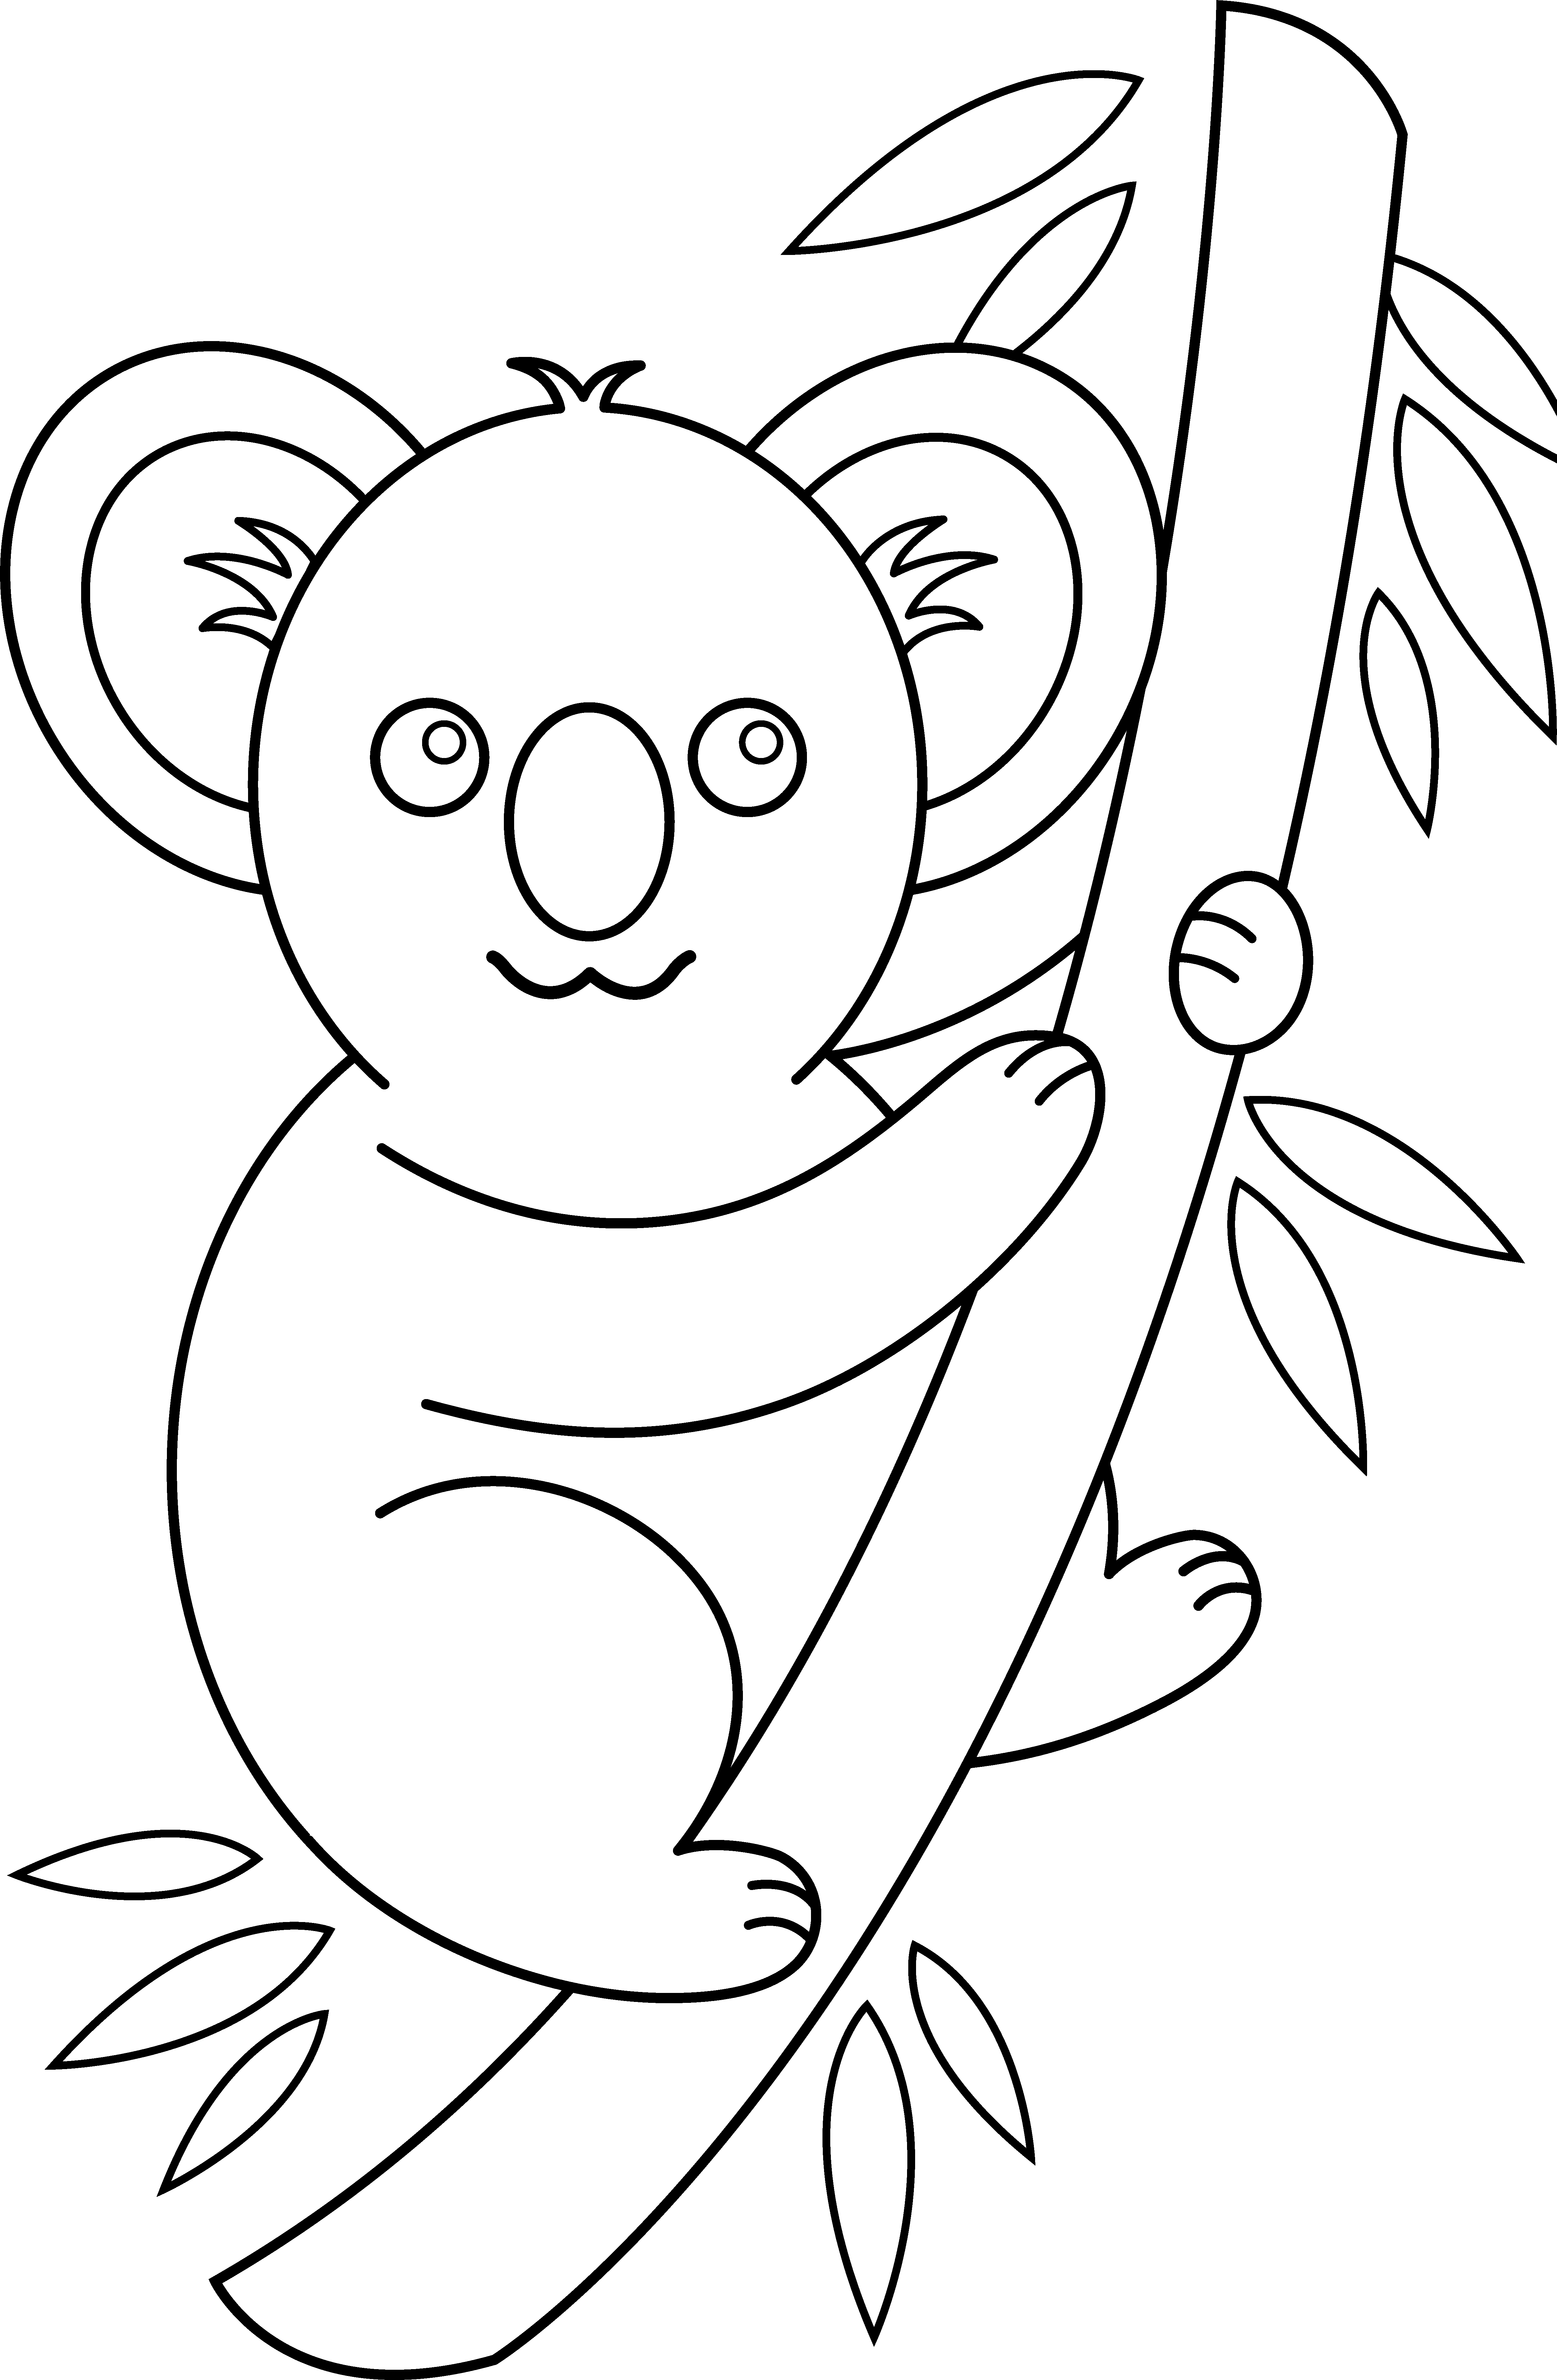 koala clipart black and white - photo #4